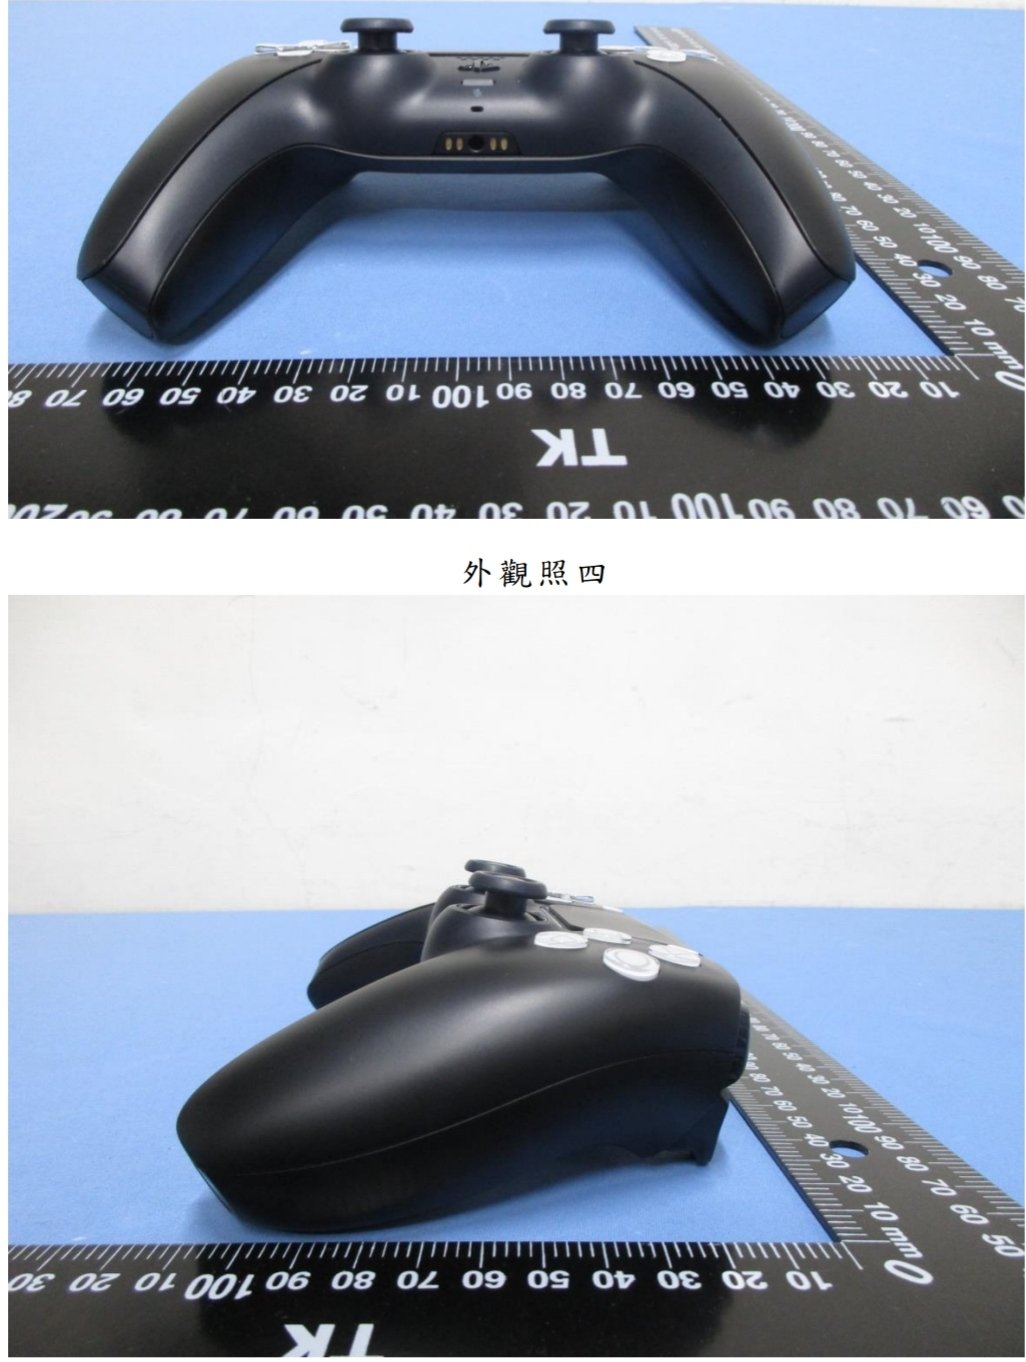 PS5 Pro: vazamento sugere supostas especificações do console